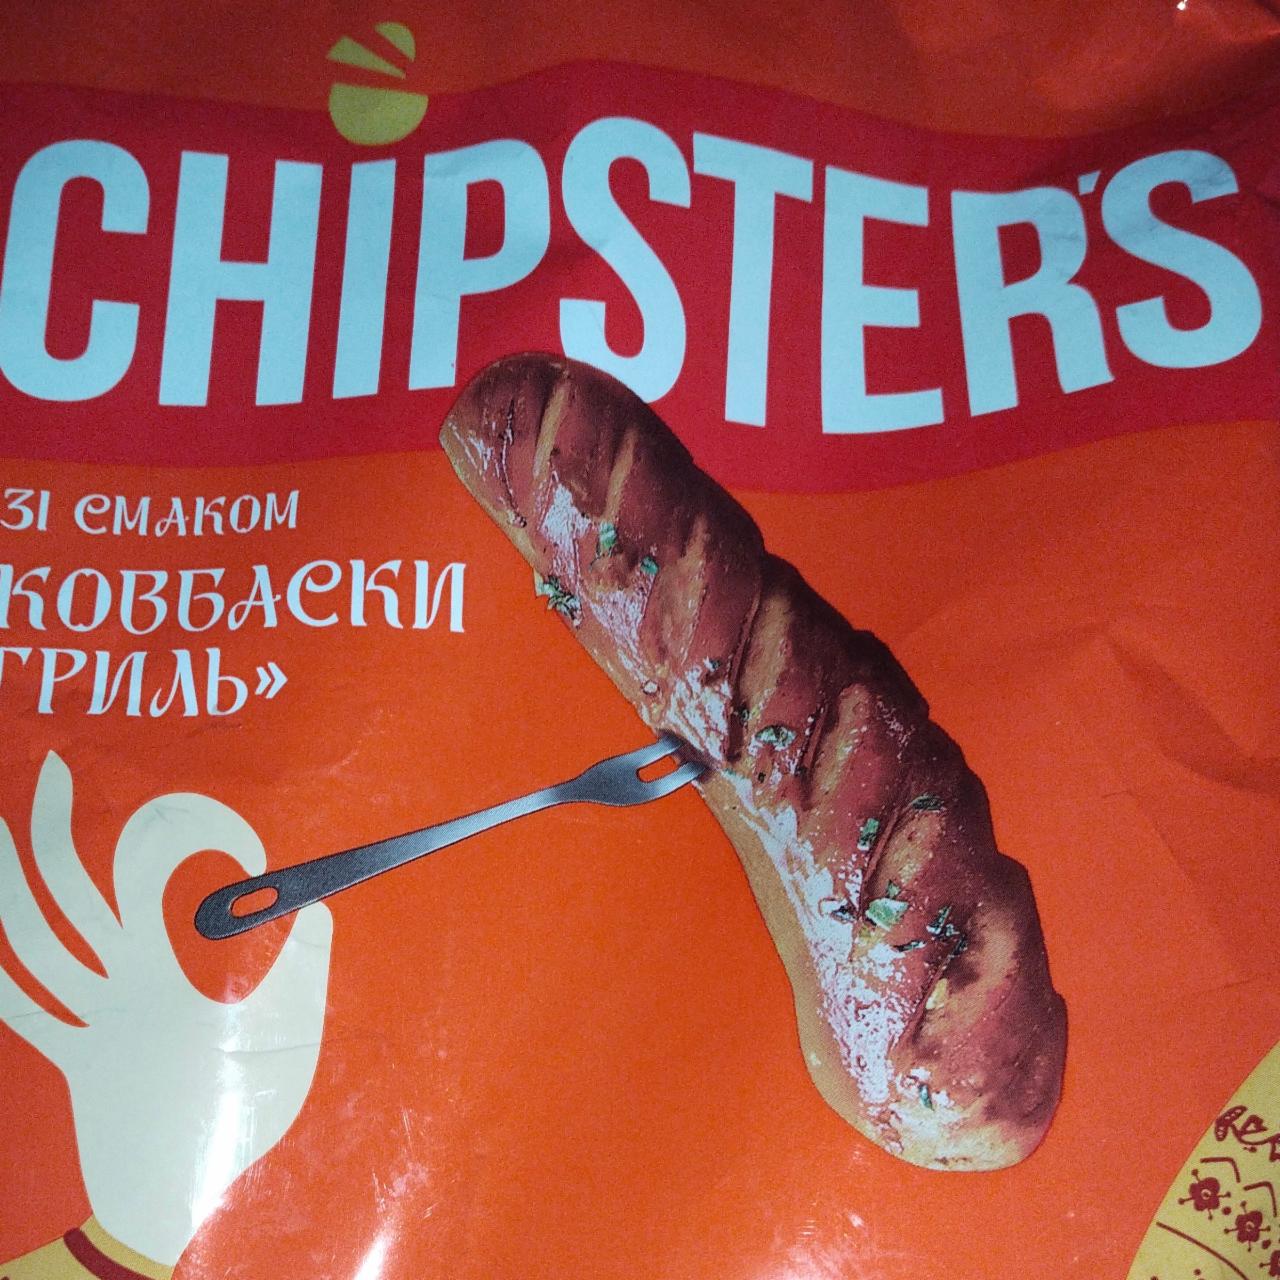 Фото - Чипсы картофельные Колбаски гриль Chipster's